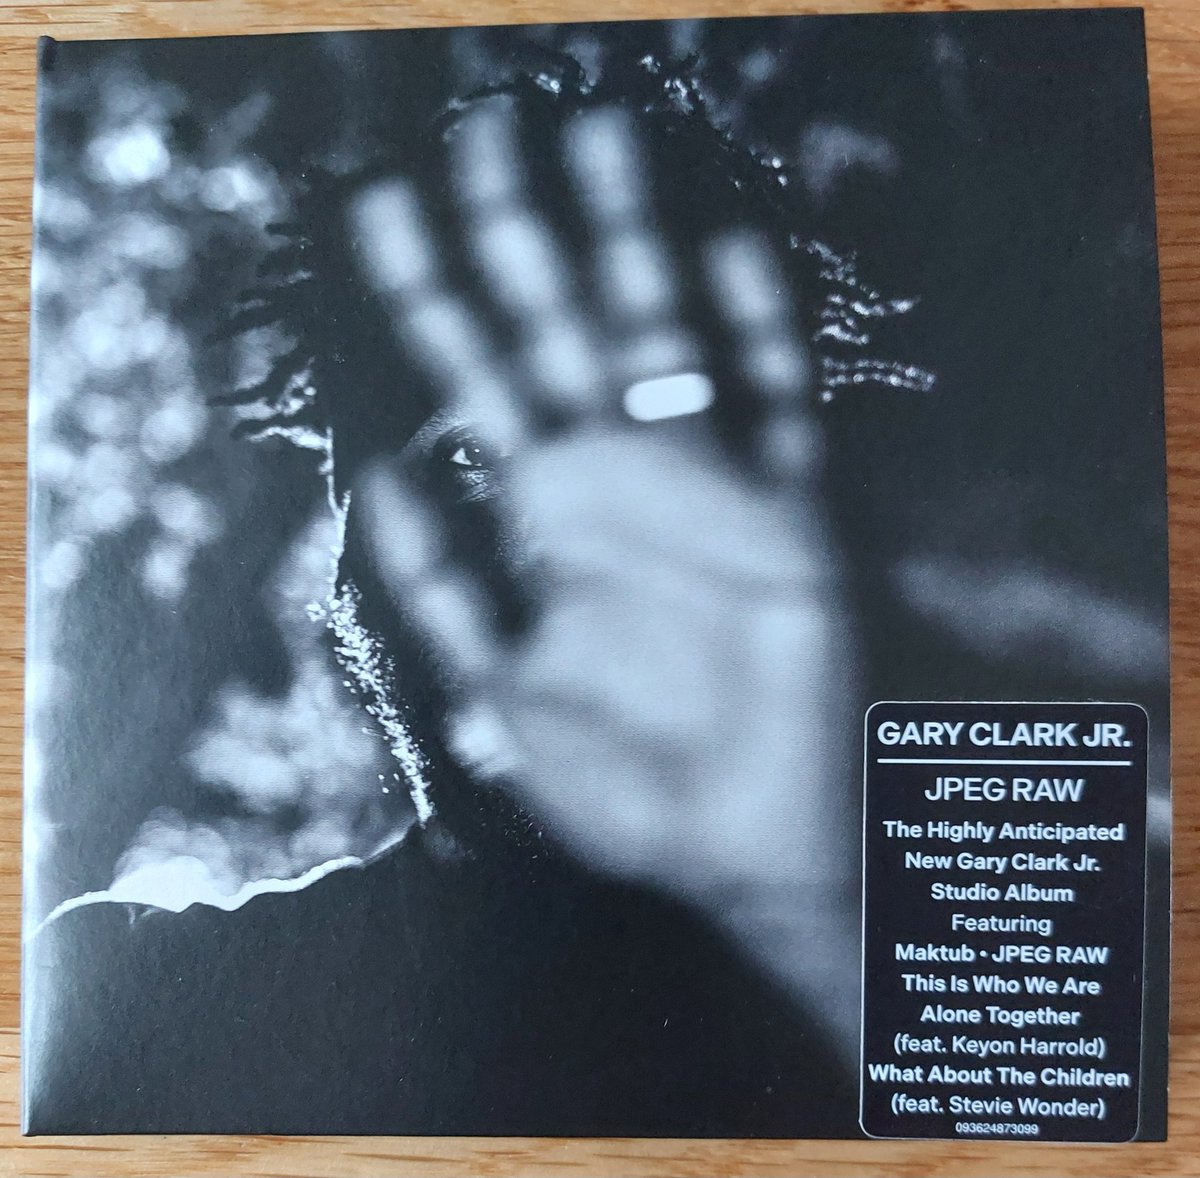 Wat een kanjer toch, die #GaryClarkJr , nu in @nachtplaten  met zijn nieuwe album #JPegRaw 😎🎸  Enjoy